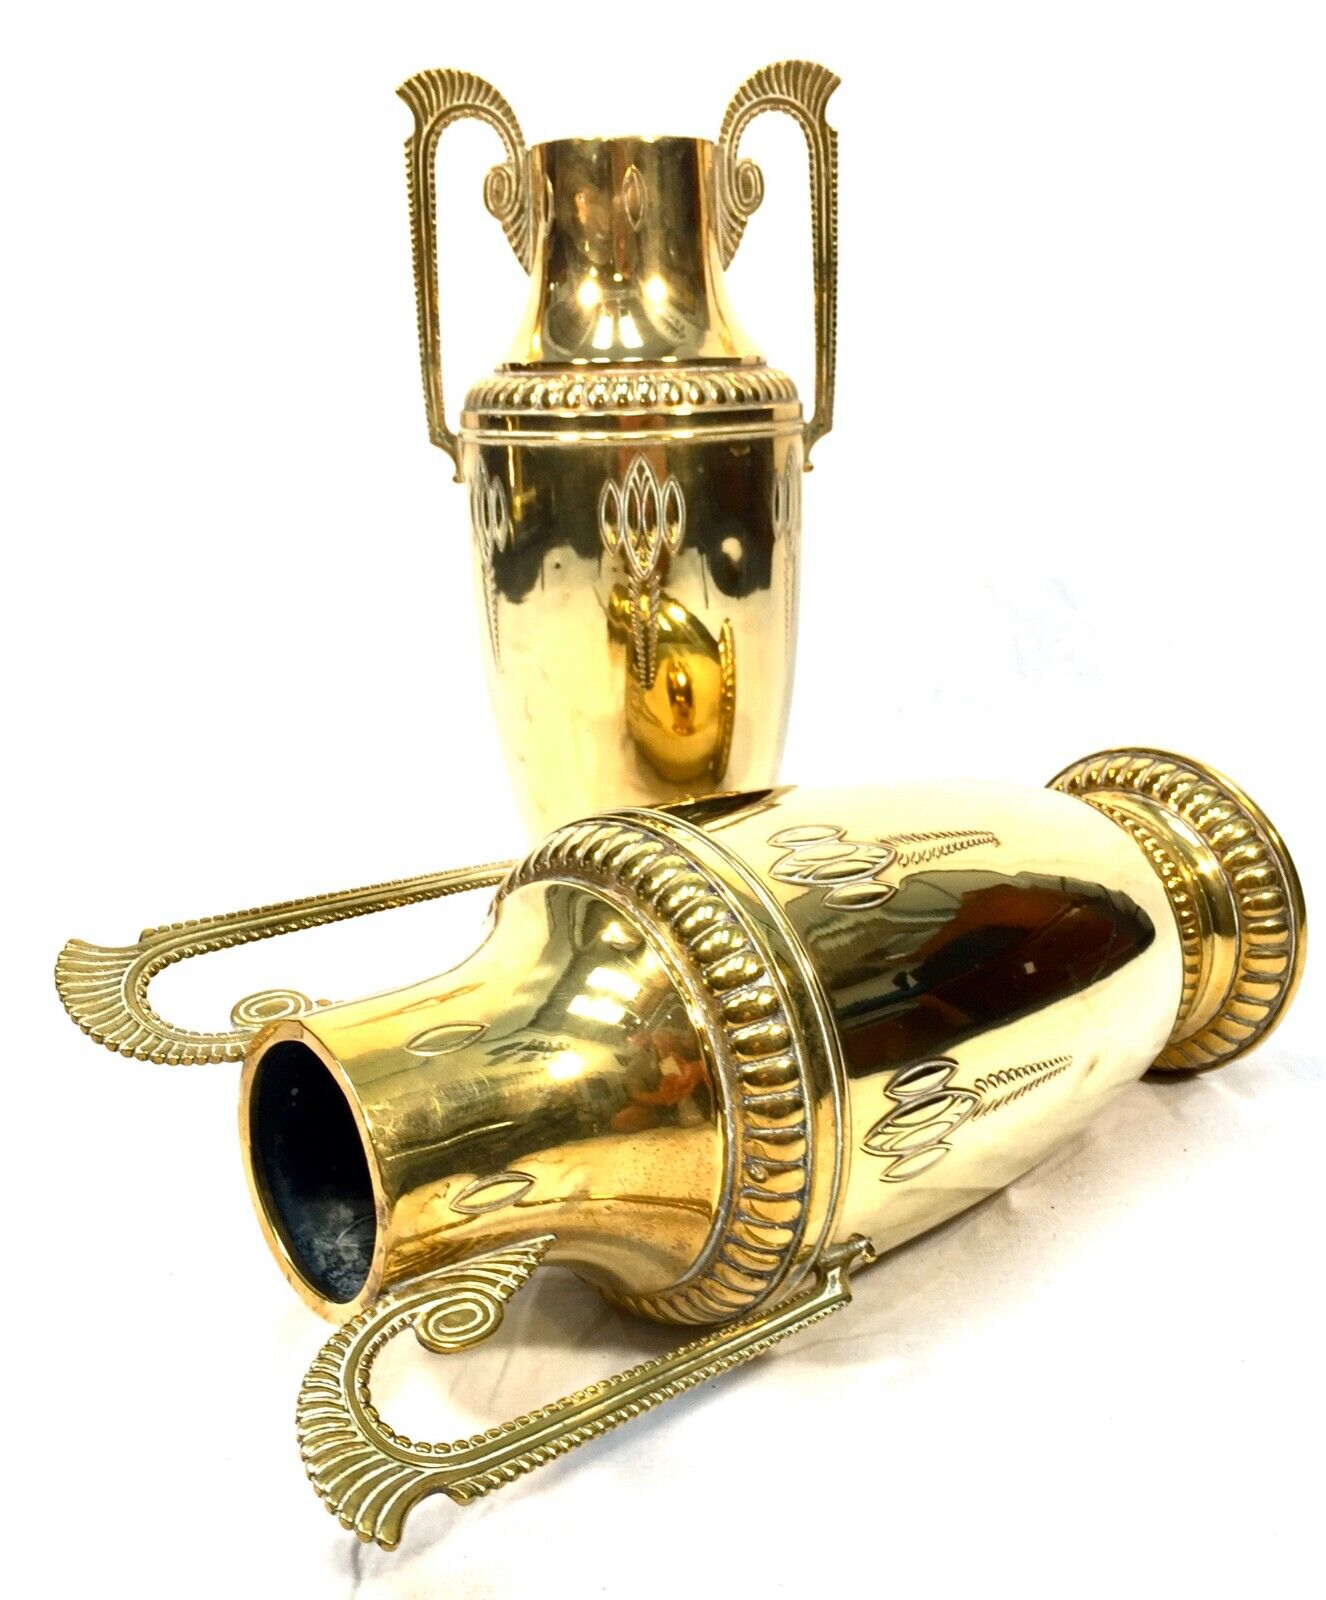 Antique Royal Daalderop Dutch Brass Vase Pair / Art Nouveau / WMF / KDM